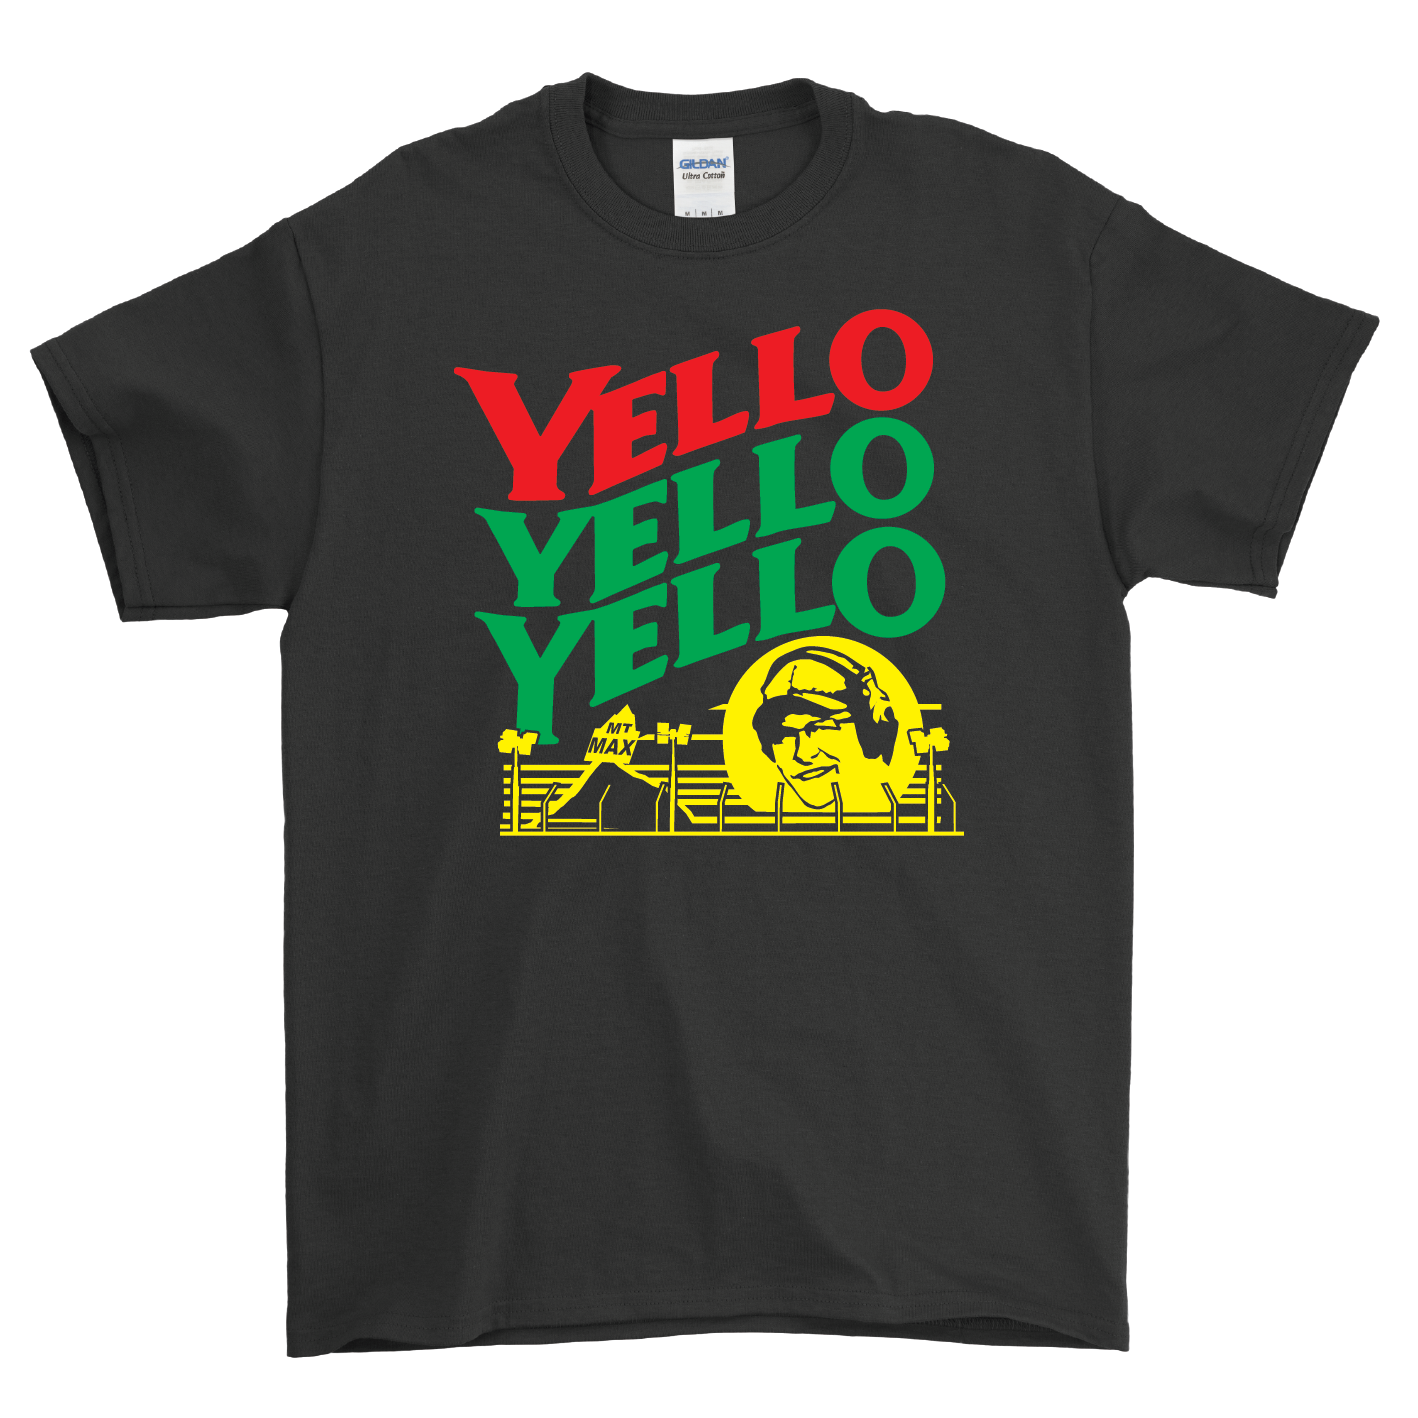 The Keyboard Racer - Yello Yello Yello Tee